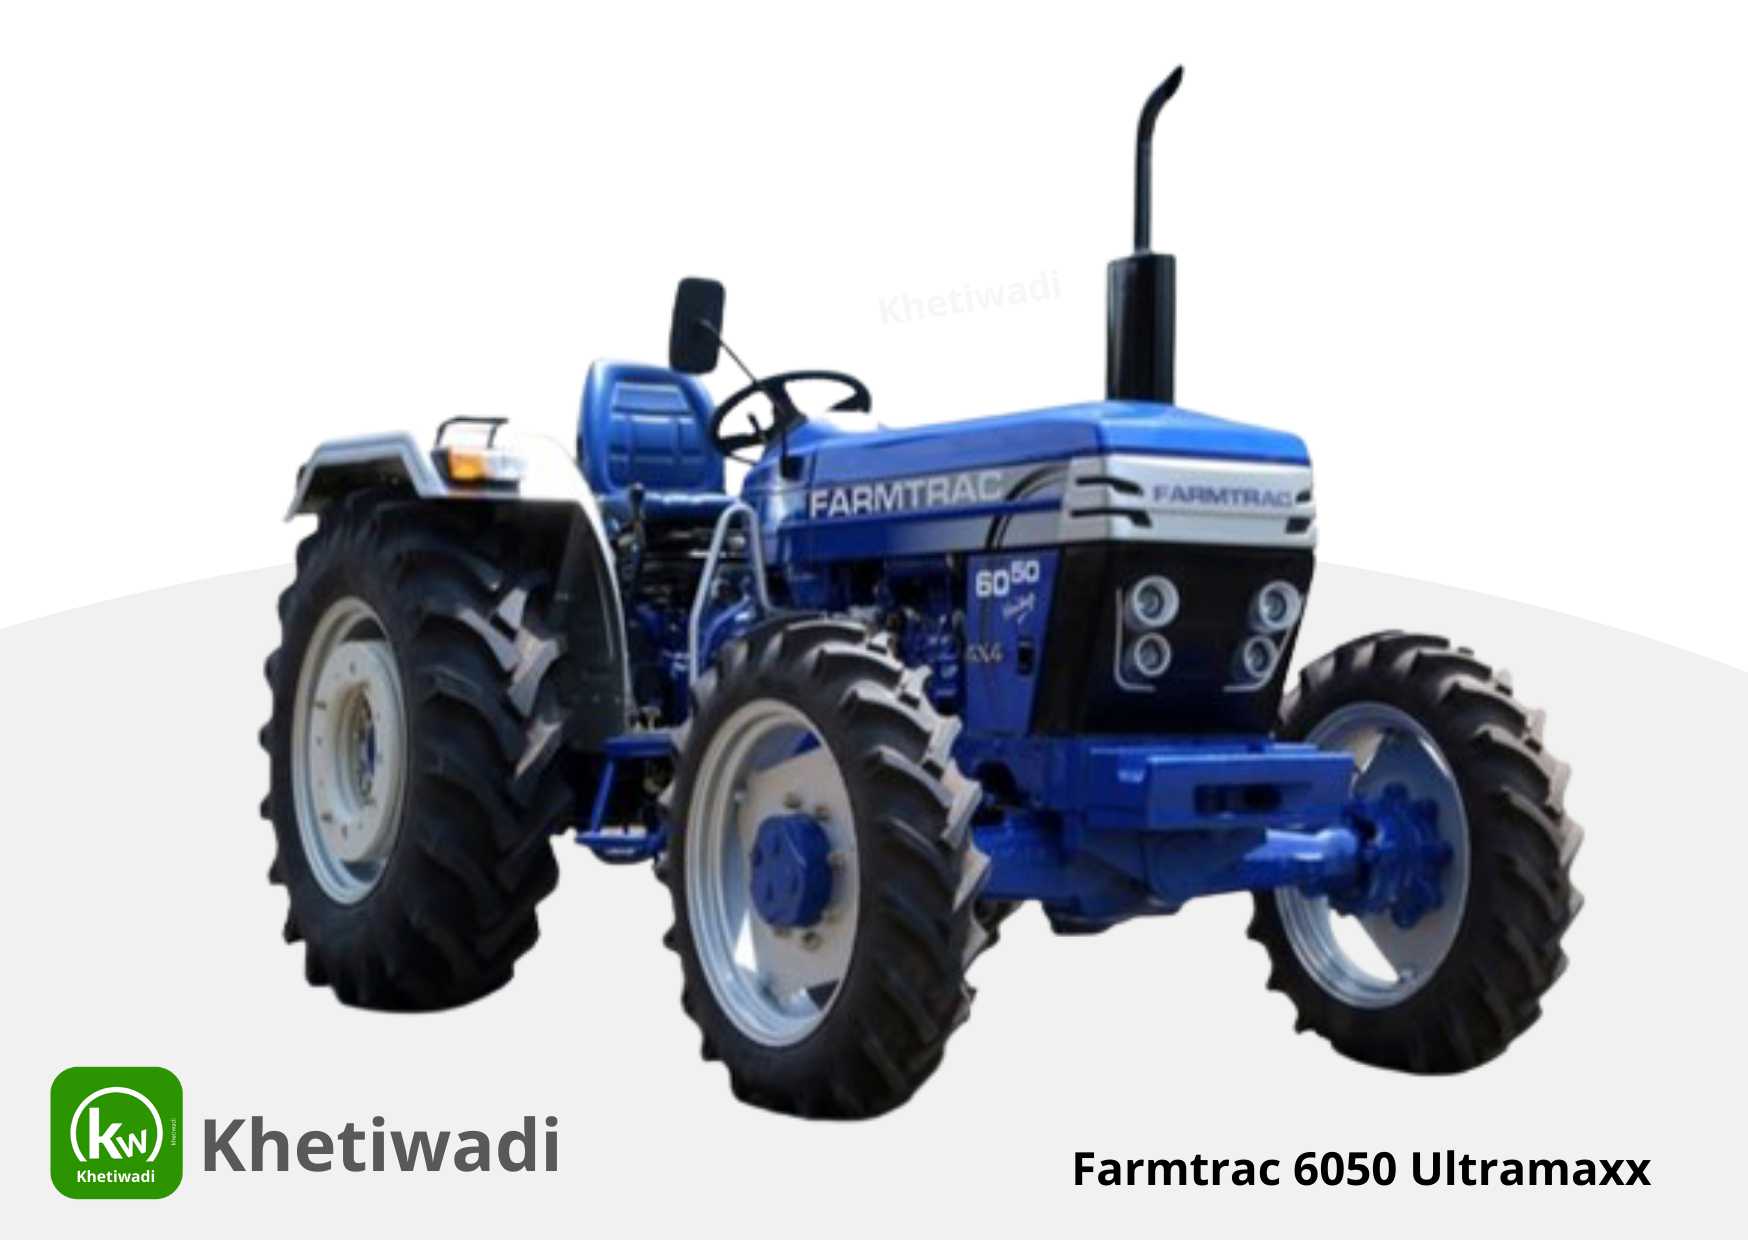 Farmtrac 6050 Ultramaxx full detail